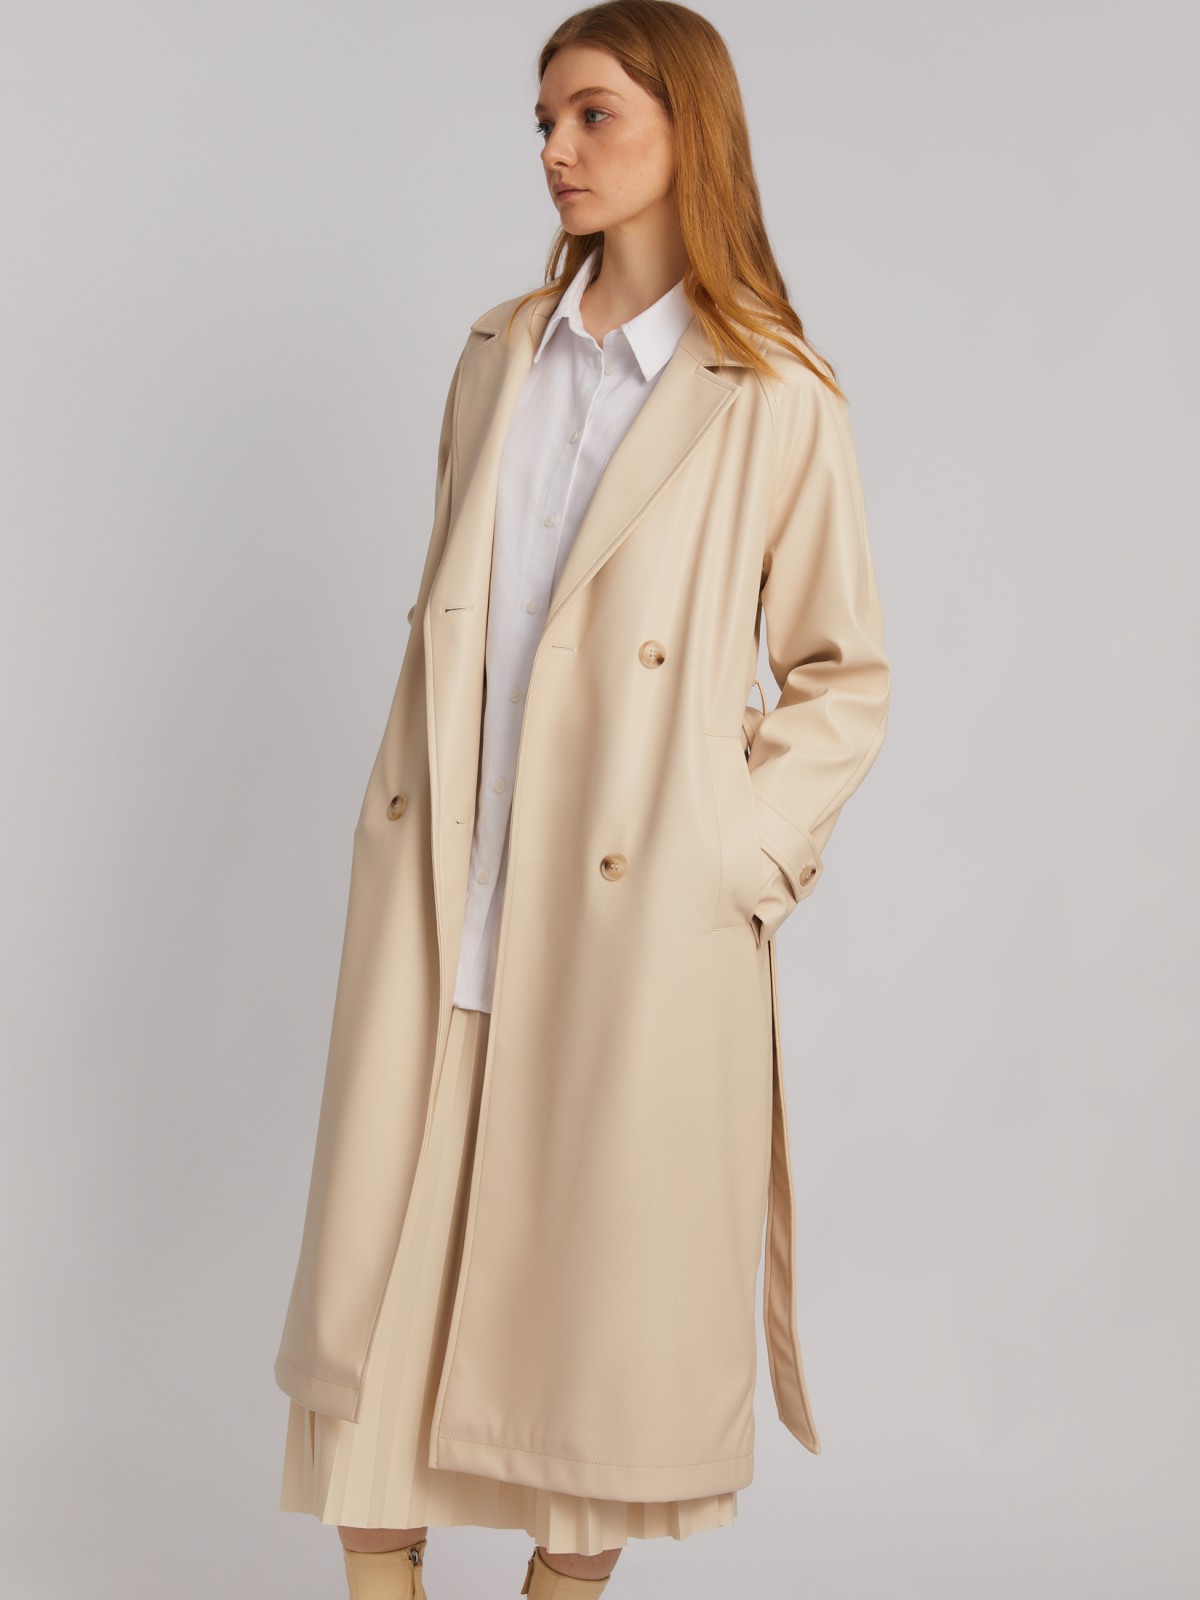 Длинное пальто-тренч из экокожи с рукавами реглан и поясом zolla 024135707024, цвет молоко, размер XS - фото 1